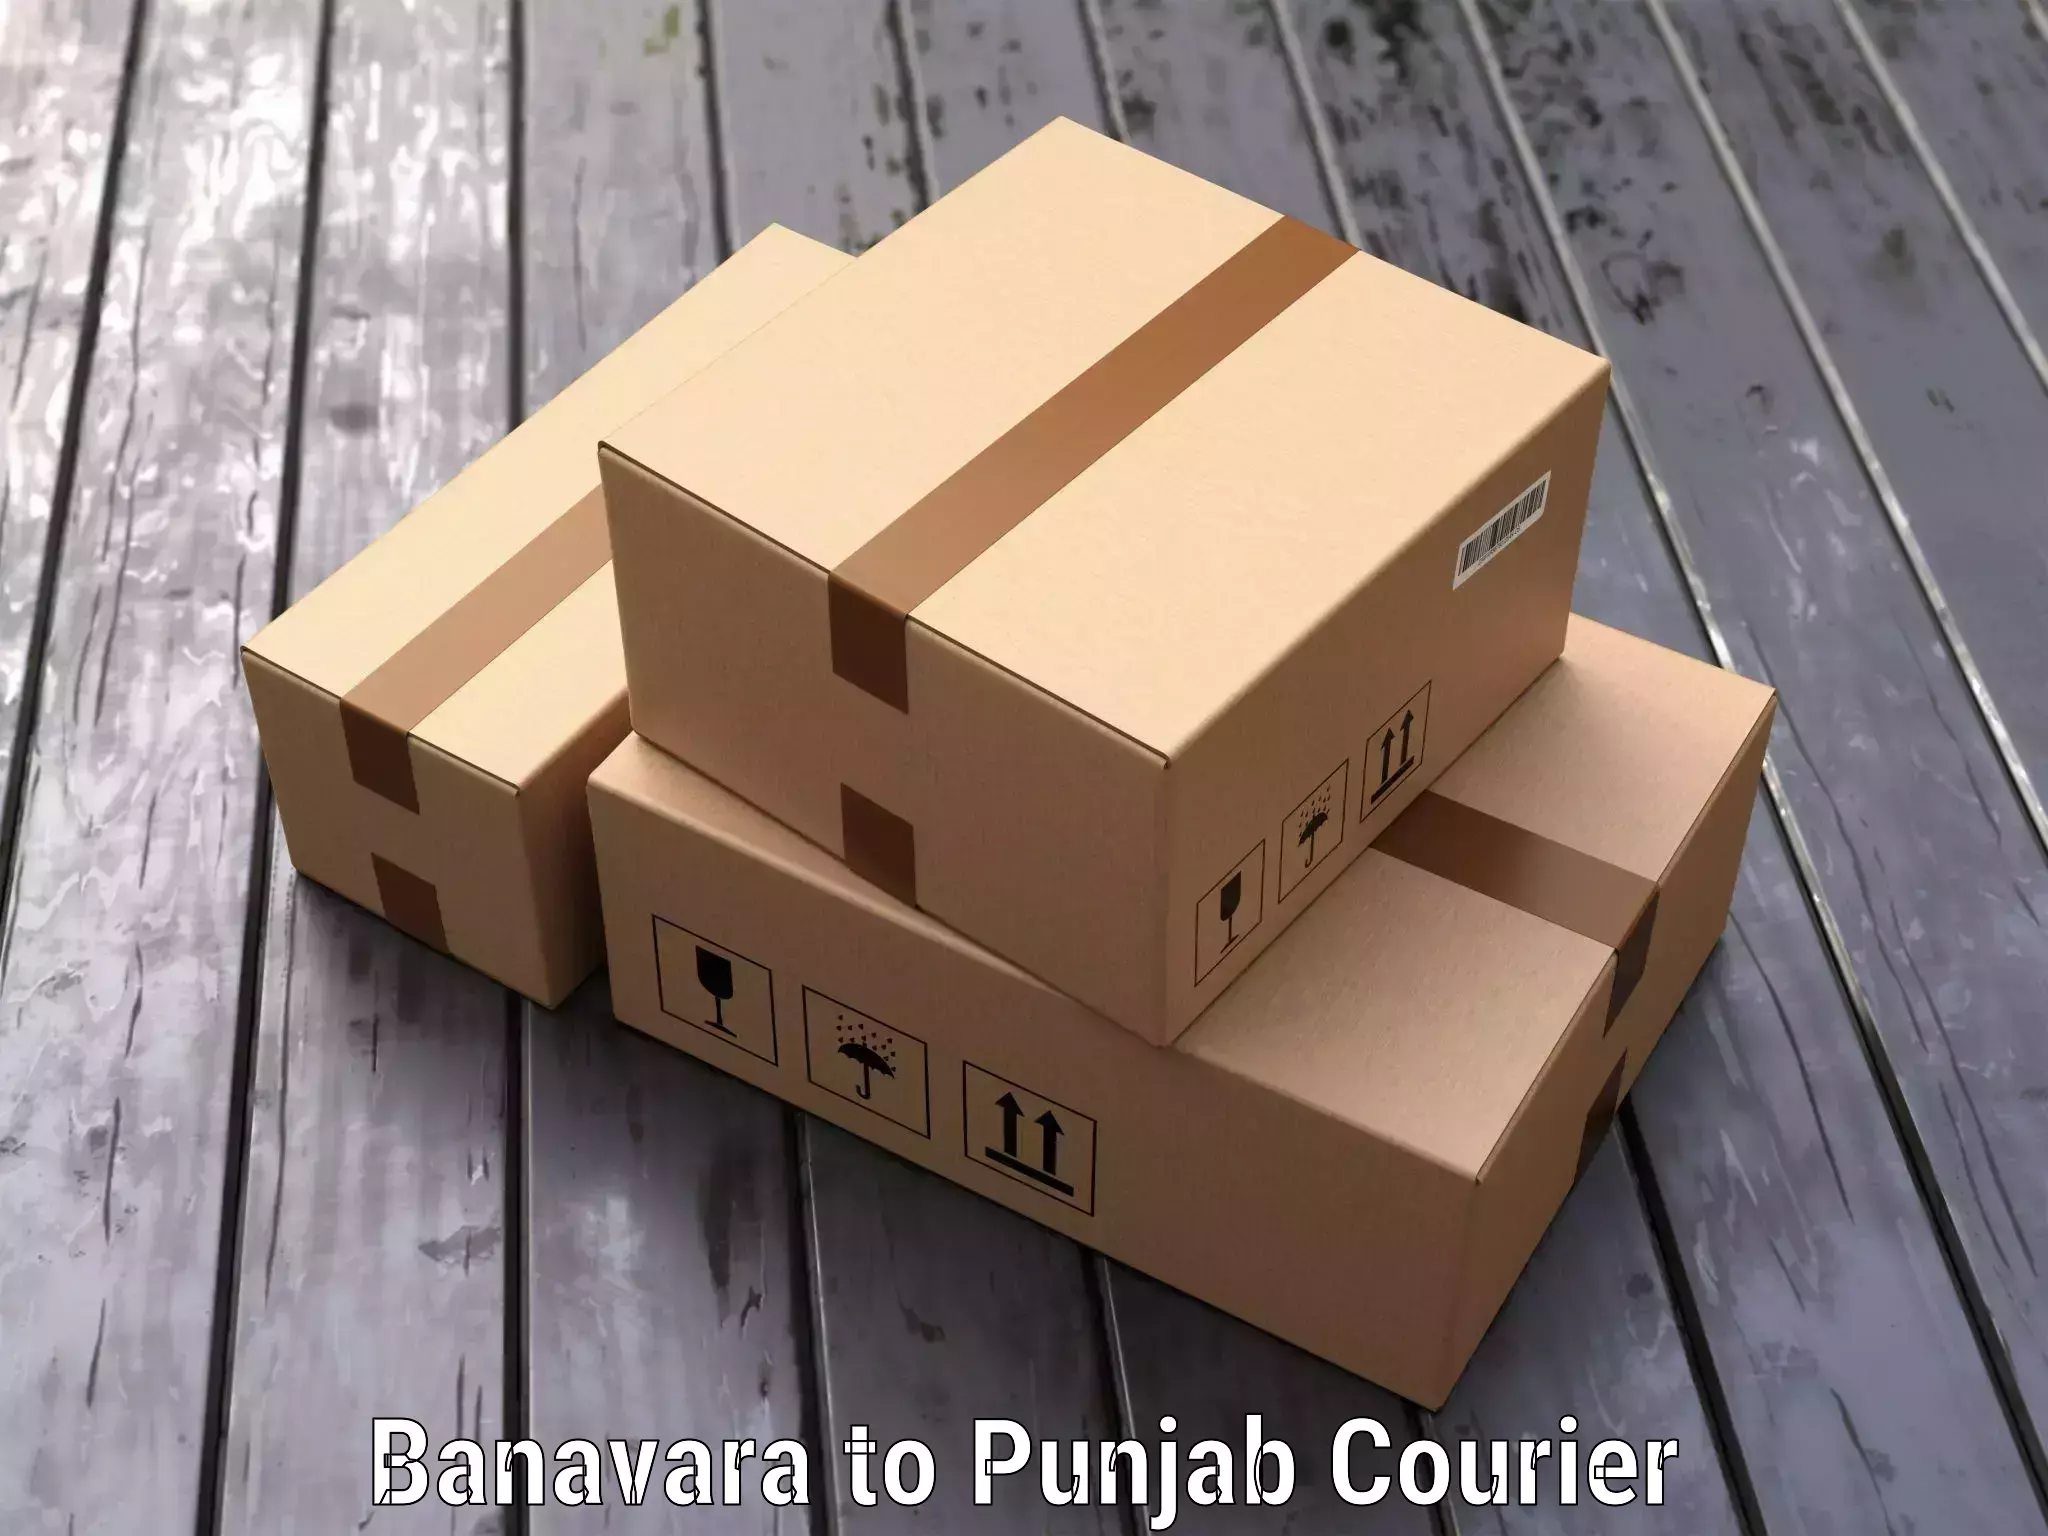 Luggage transport consulting Banavara to Punjab